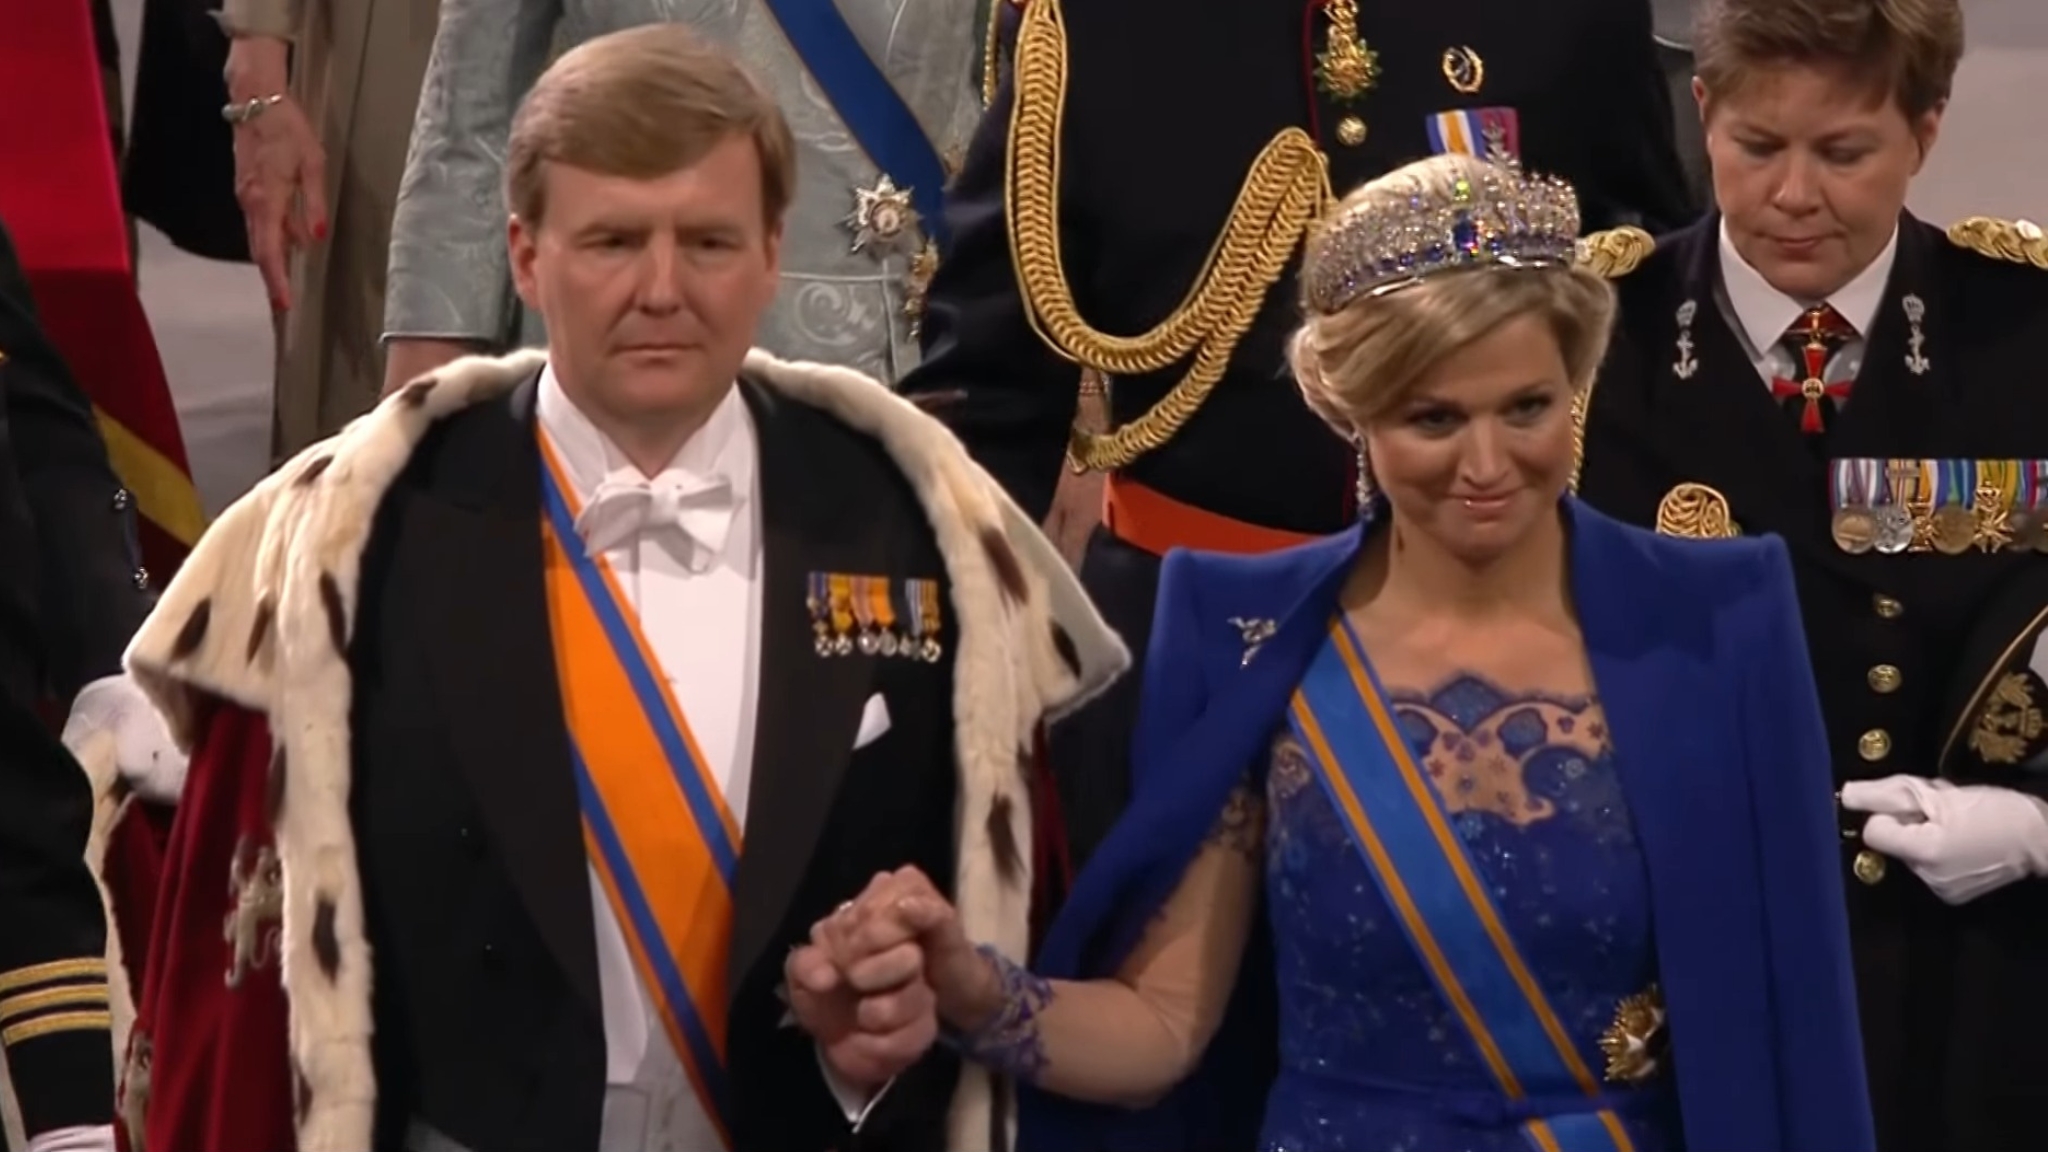 The Dutch Monarchy